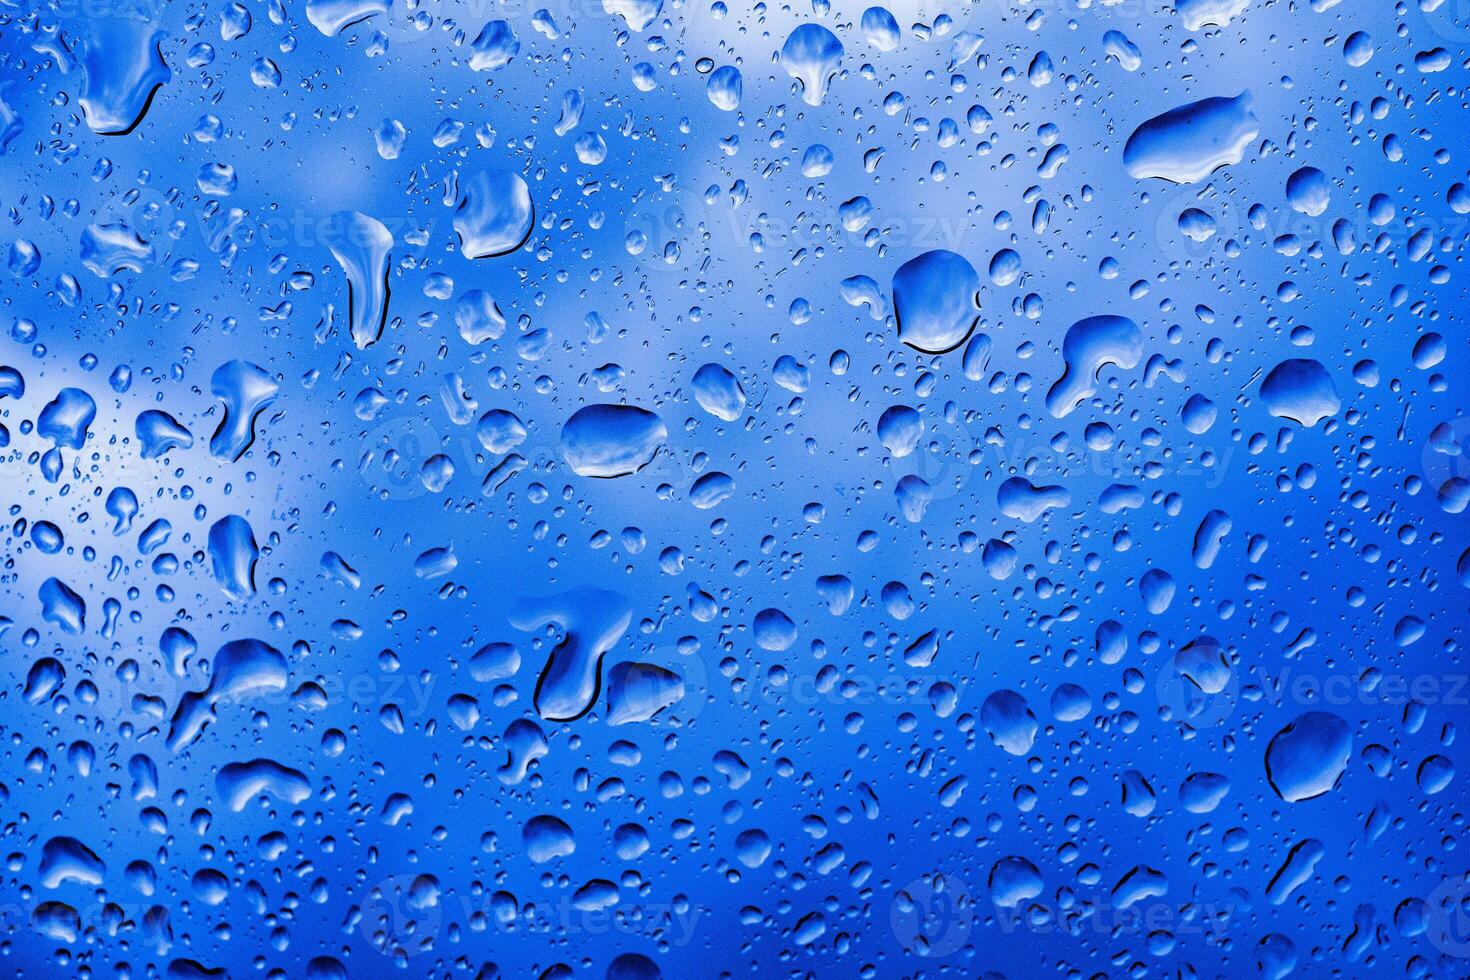 água da chuva cai no vidro da janela do carro foto